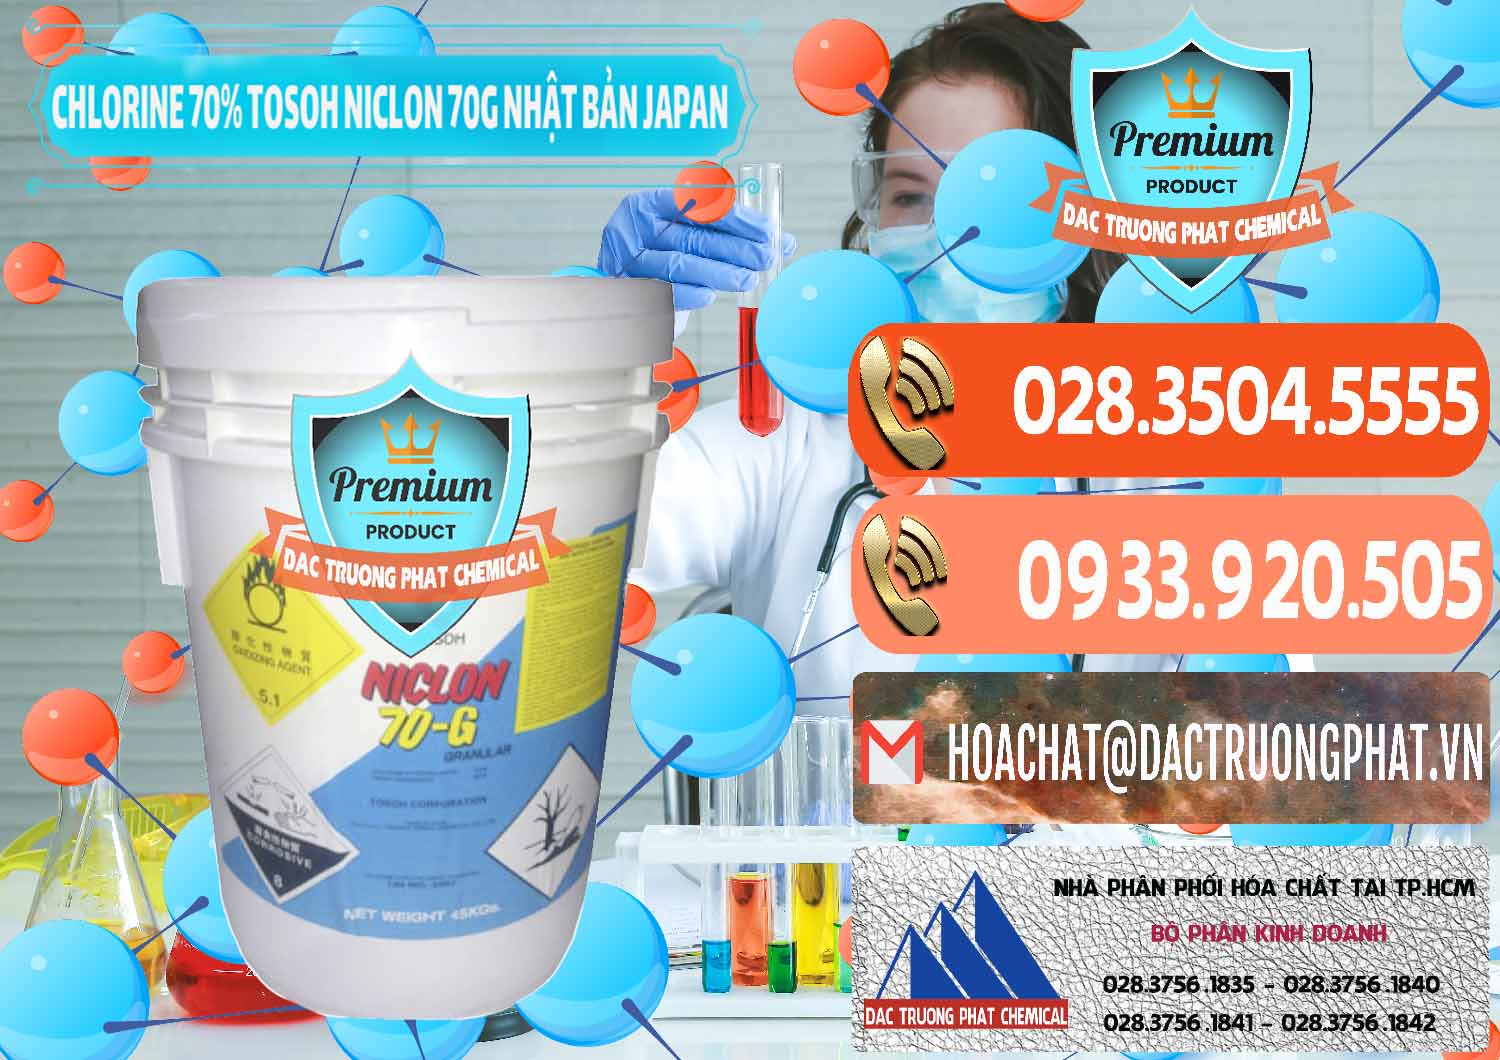 Nơi bán & cung ứng Clorin – Chlorine 70% Tosoh Niclon 70G Nhật Bản Japan - 0242 - Cty cung cấp - phân phối hóa chất tại TP.HCM - hoachatmientay.com